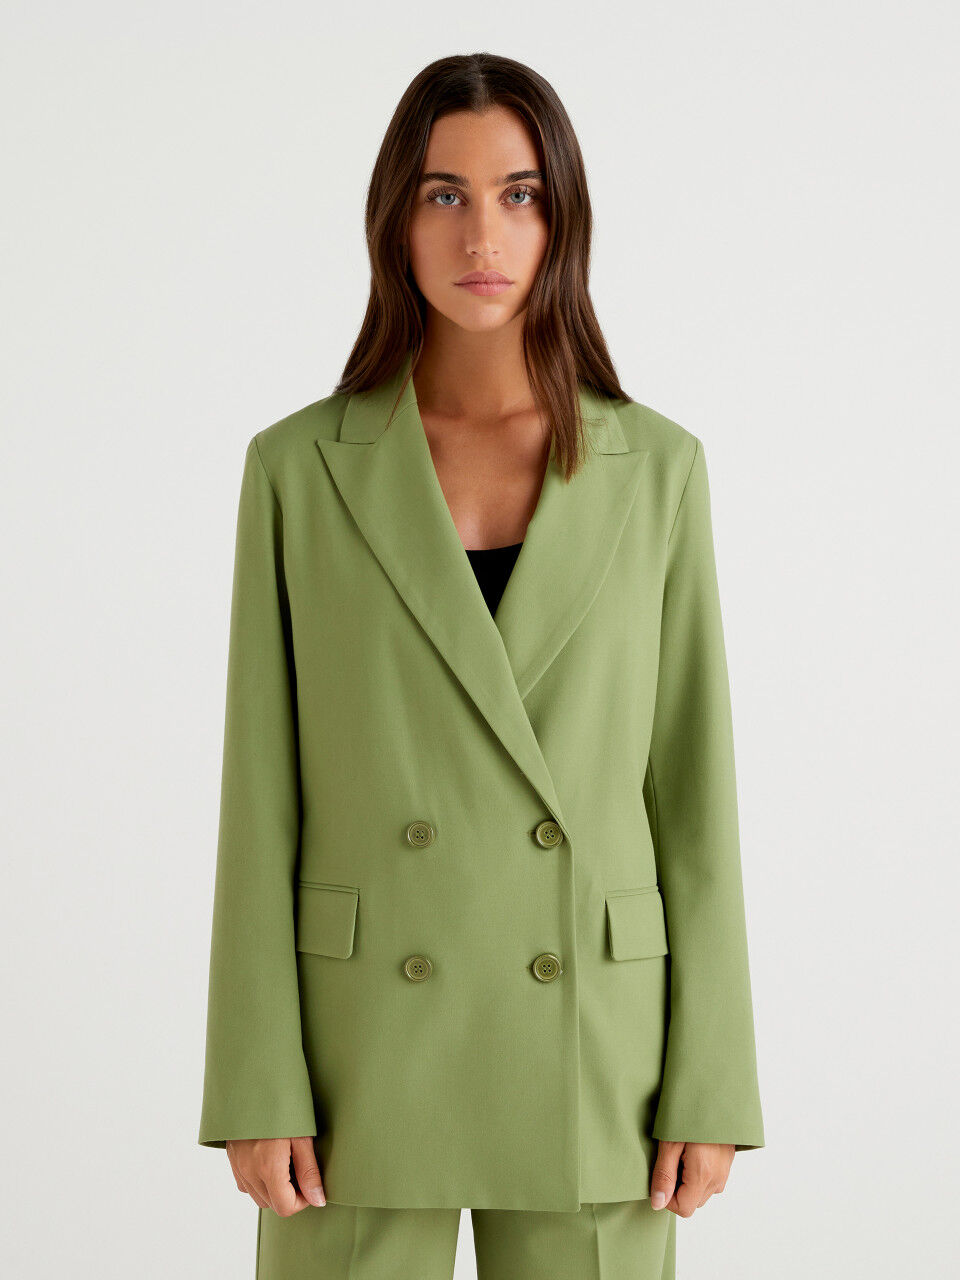 Brown 42                  EU WOMEN FASHION Jackets Fur discount 95% United colors of benetton vest 